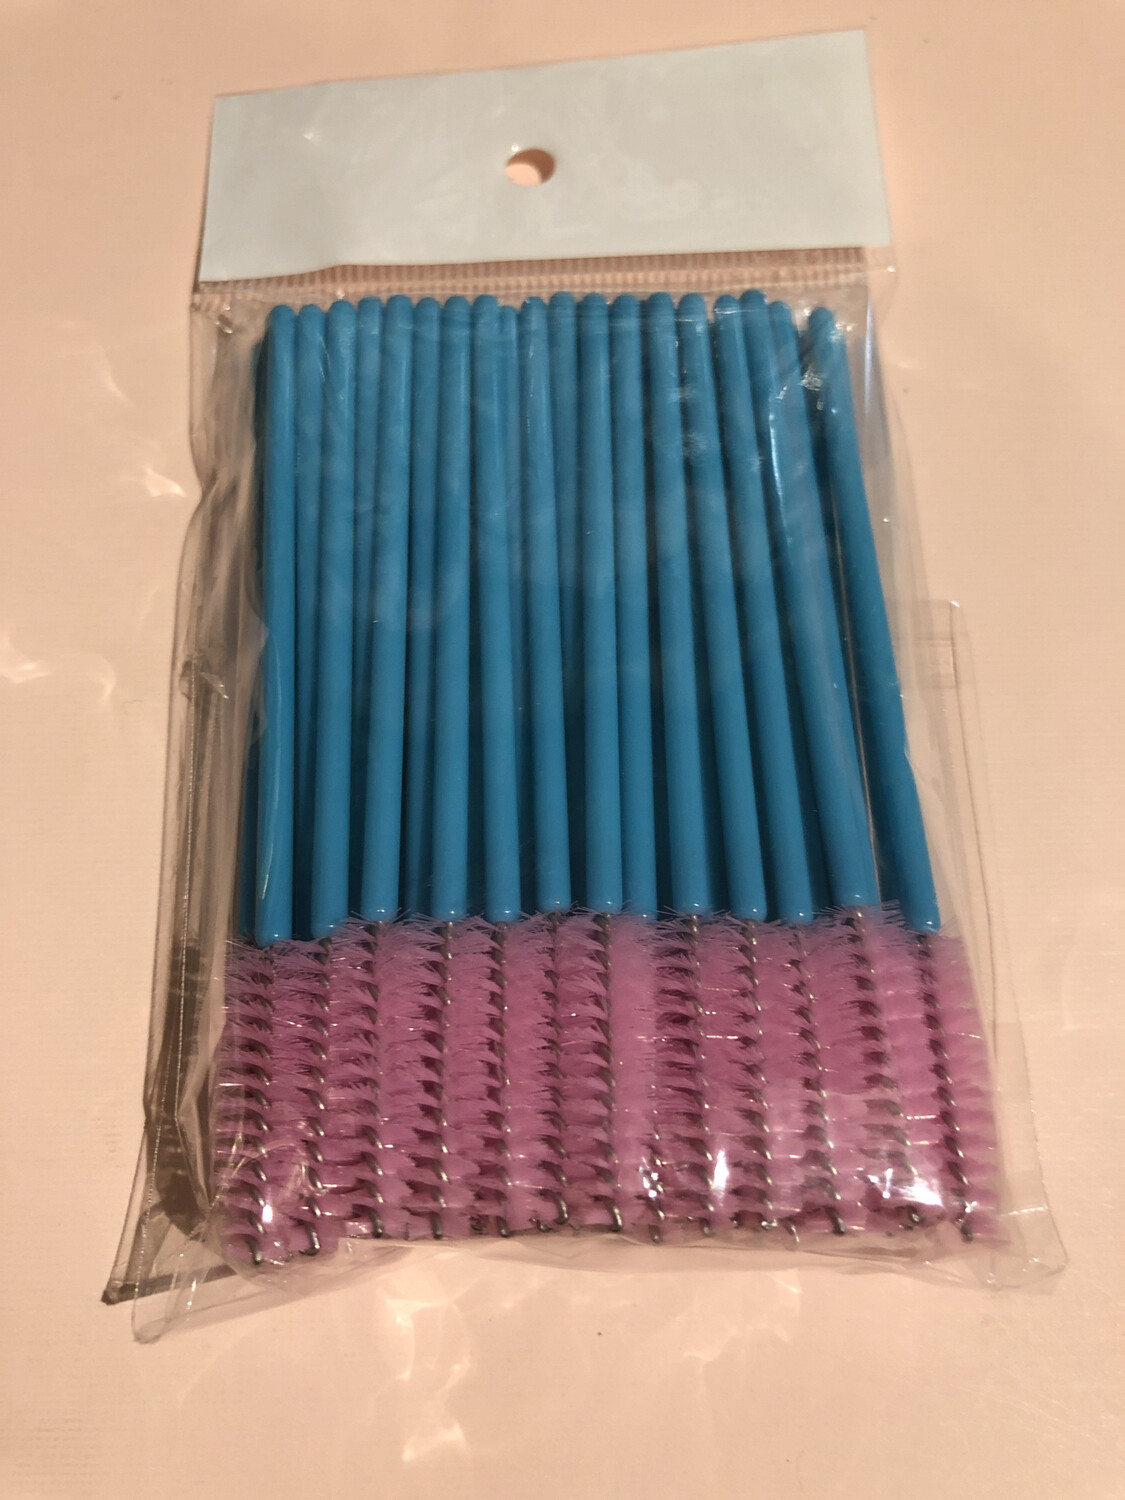 50pcs Disposable Mascara Wands Makeup Brushes Eyelash Eye Lash Brush Make Up Applicators Kit ( Turquoise Pink)